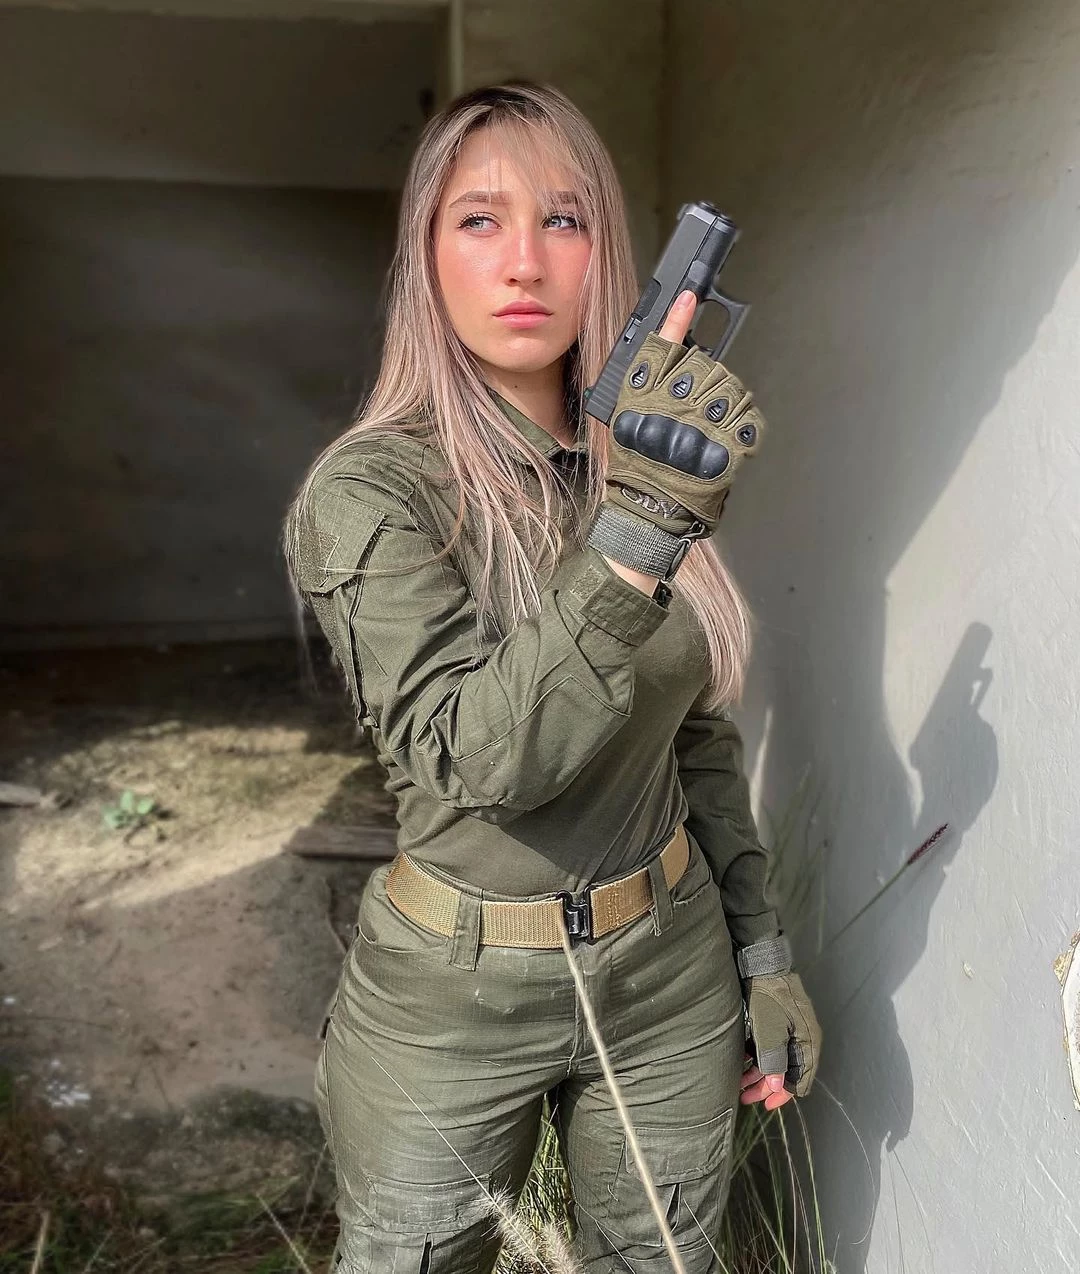 戰力無敵 以色列女兵Natalia Fadeev美顏搭軍服想被掃射-1